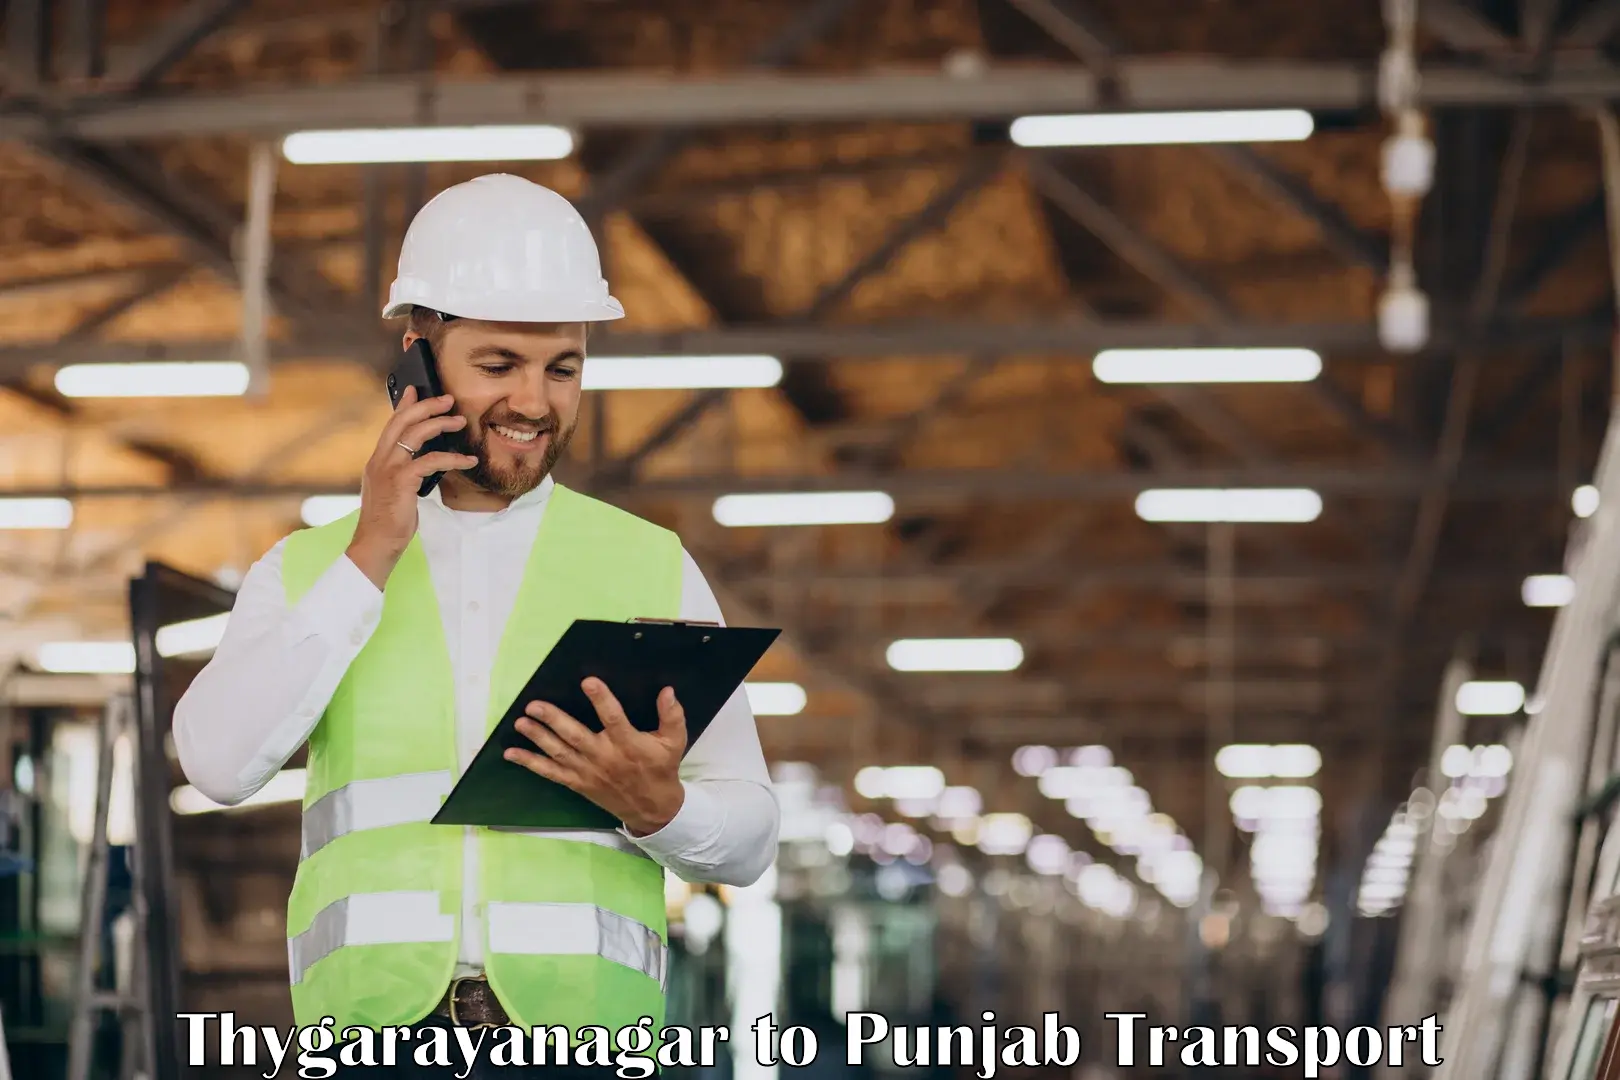 Road transport online services Thygarayanagar to Ajnala